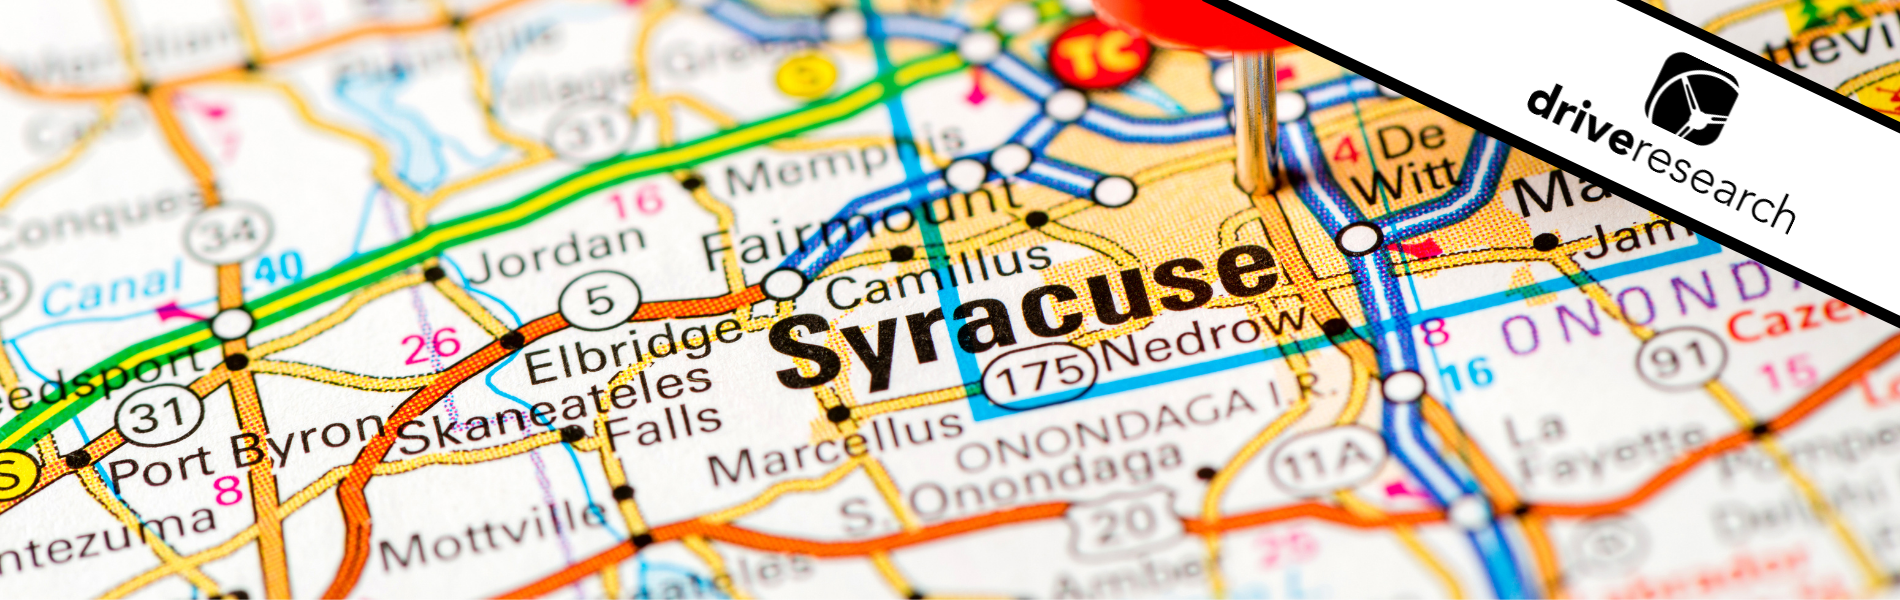 map of syracuse - upstate NY